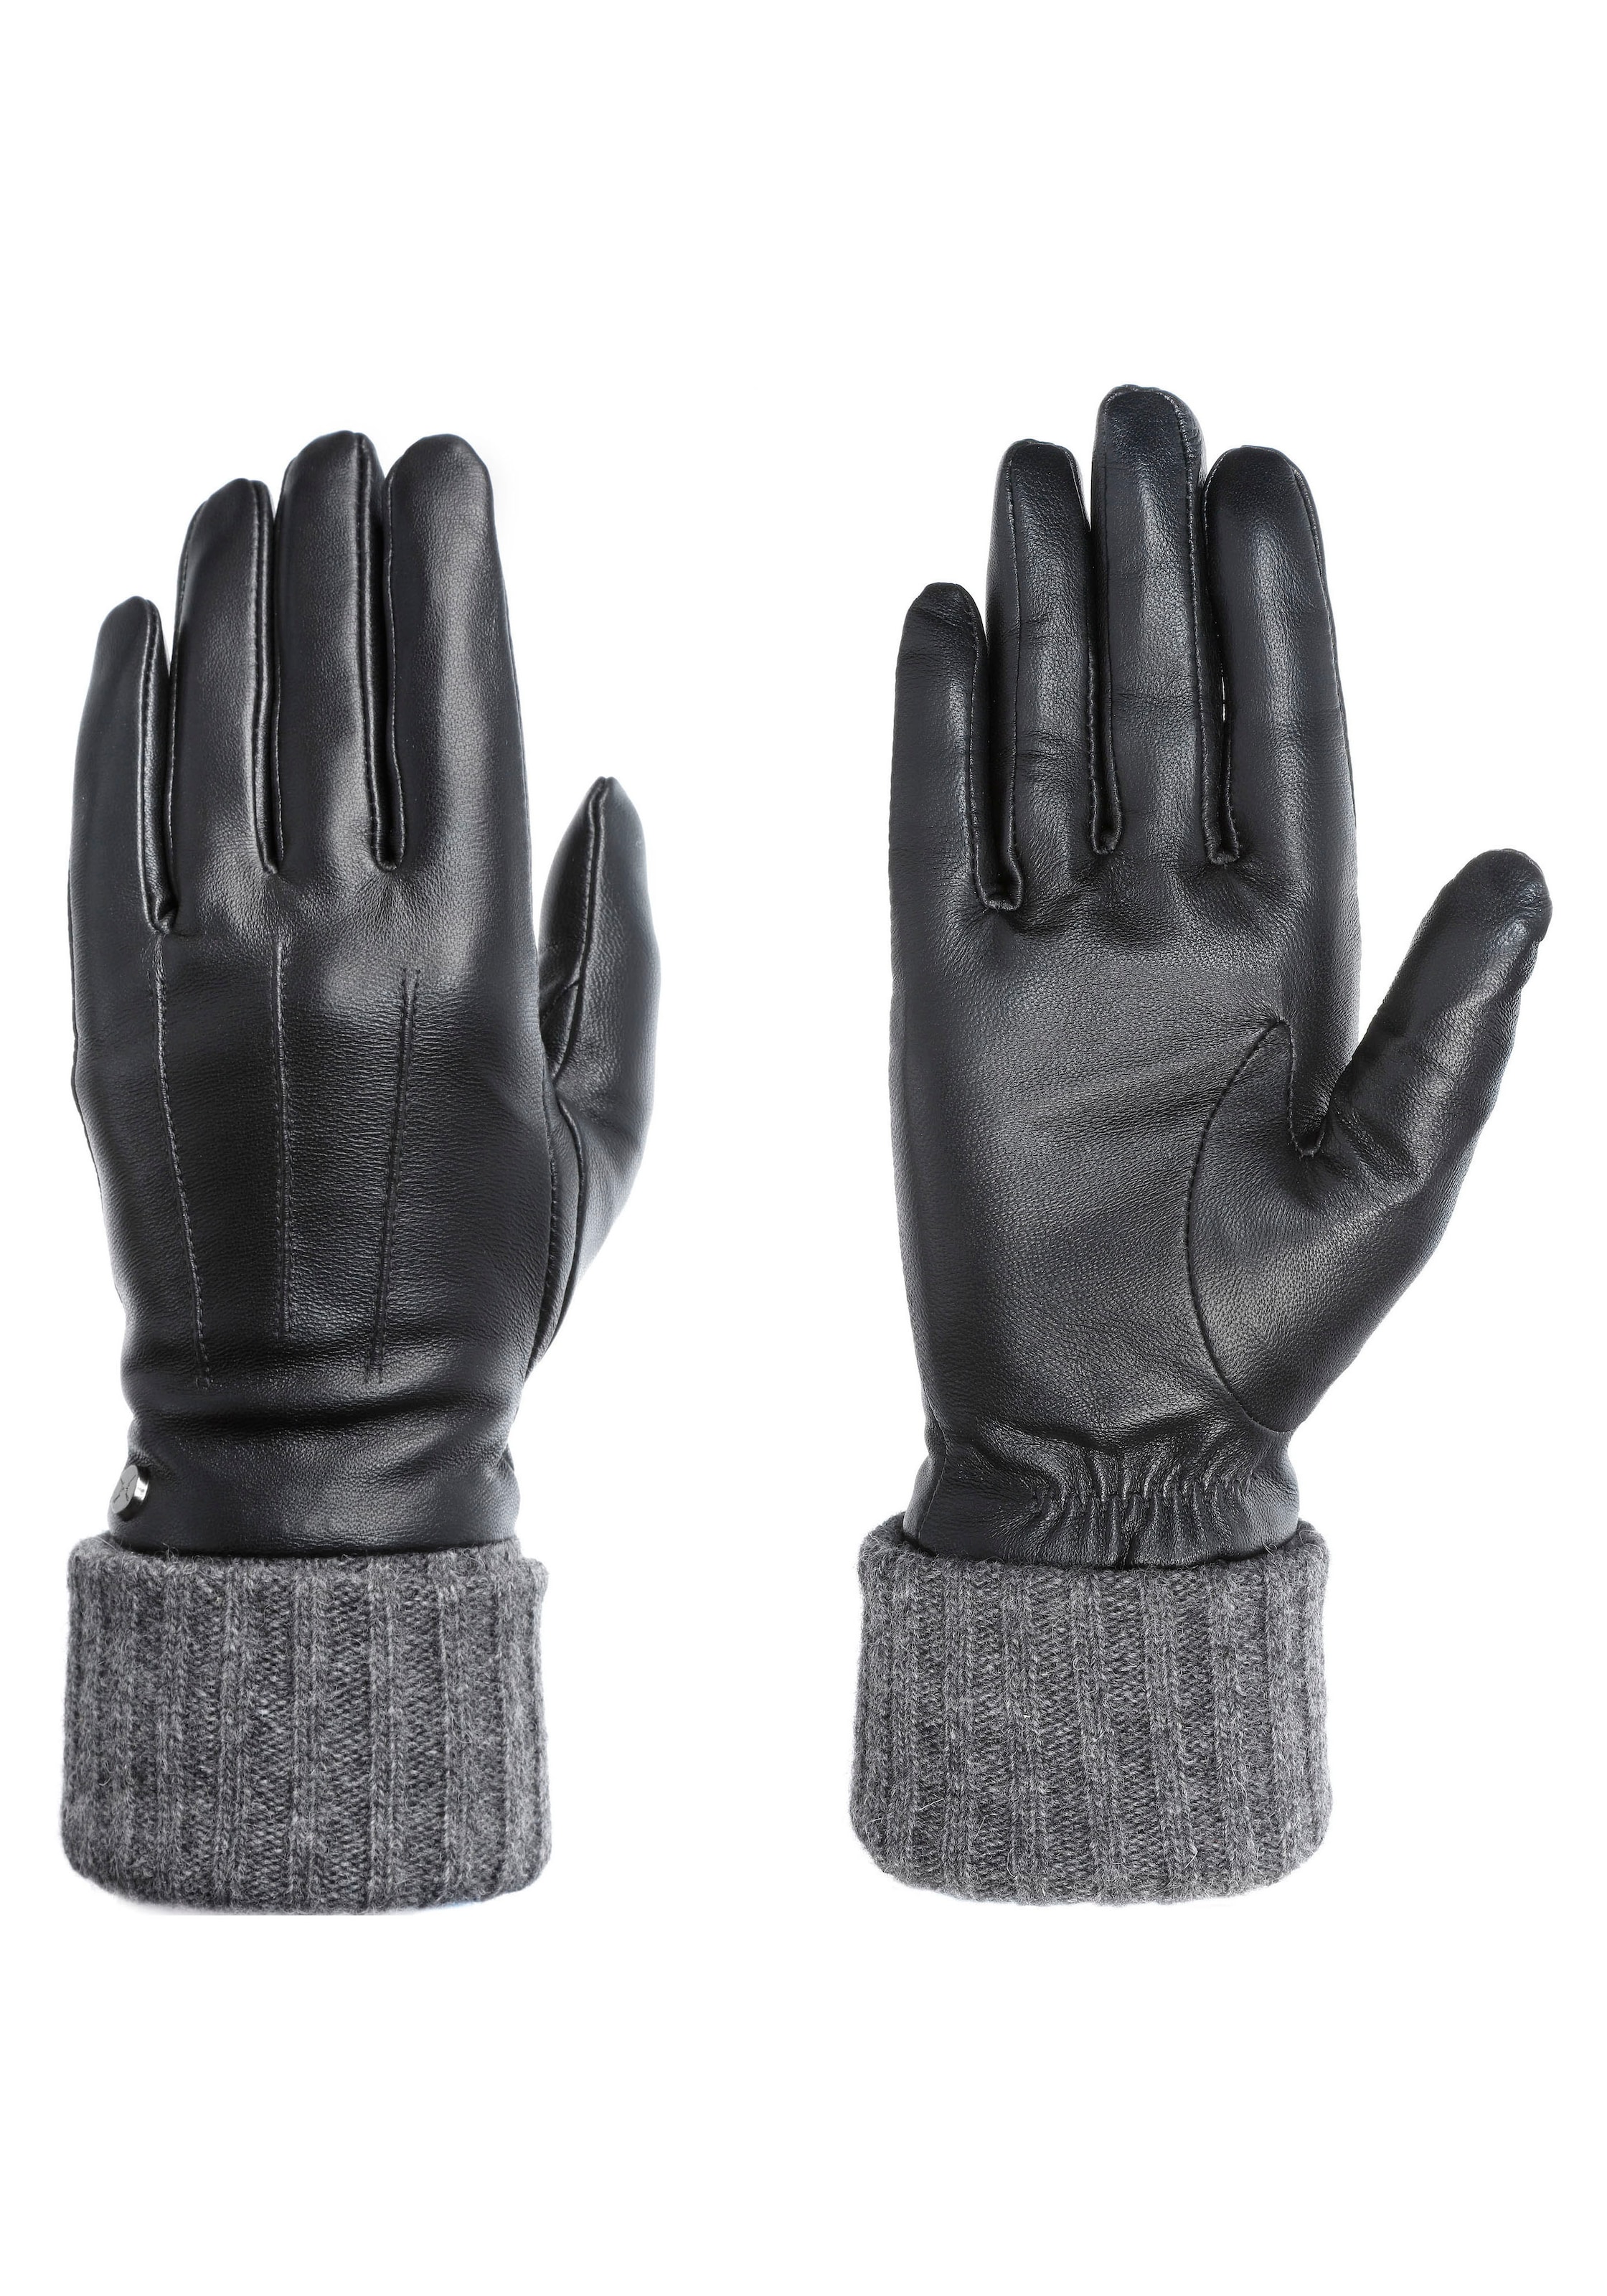 Damen Handschuhe SALE & Outlet | Angebote ▷ günstige BAUR